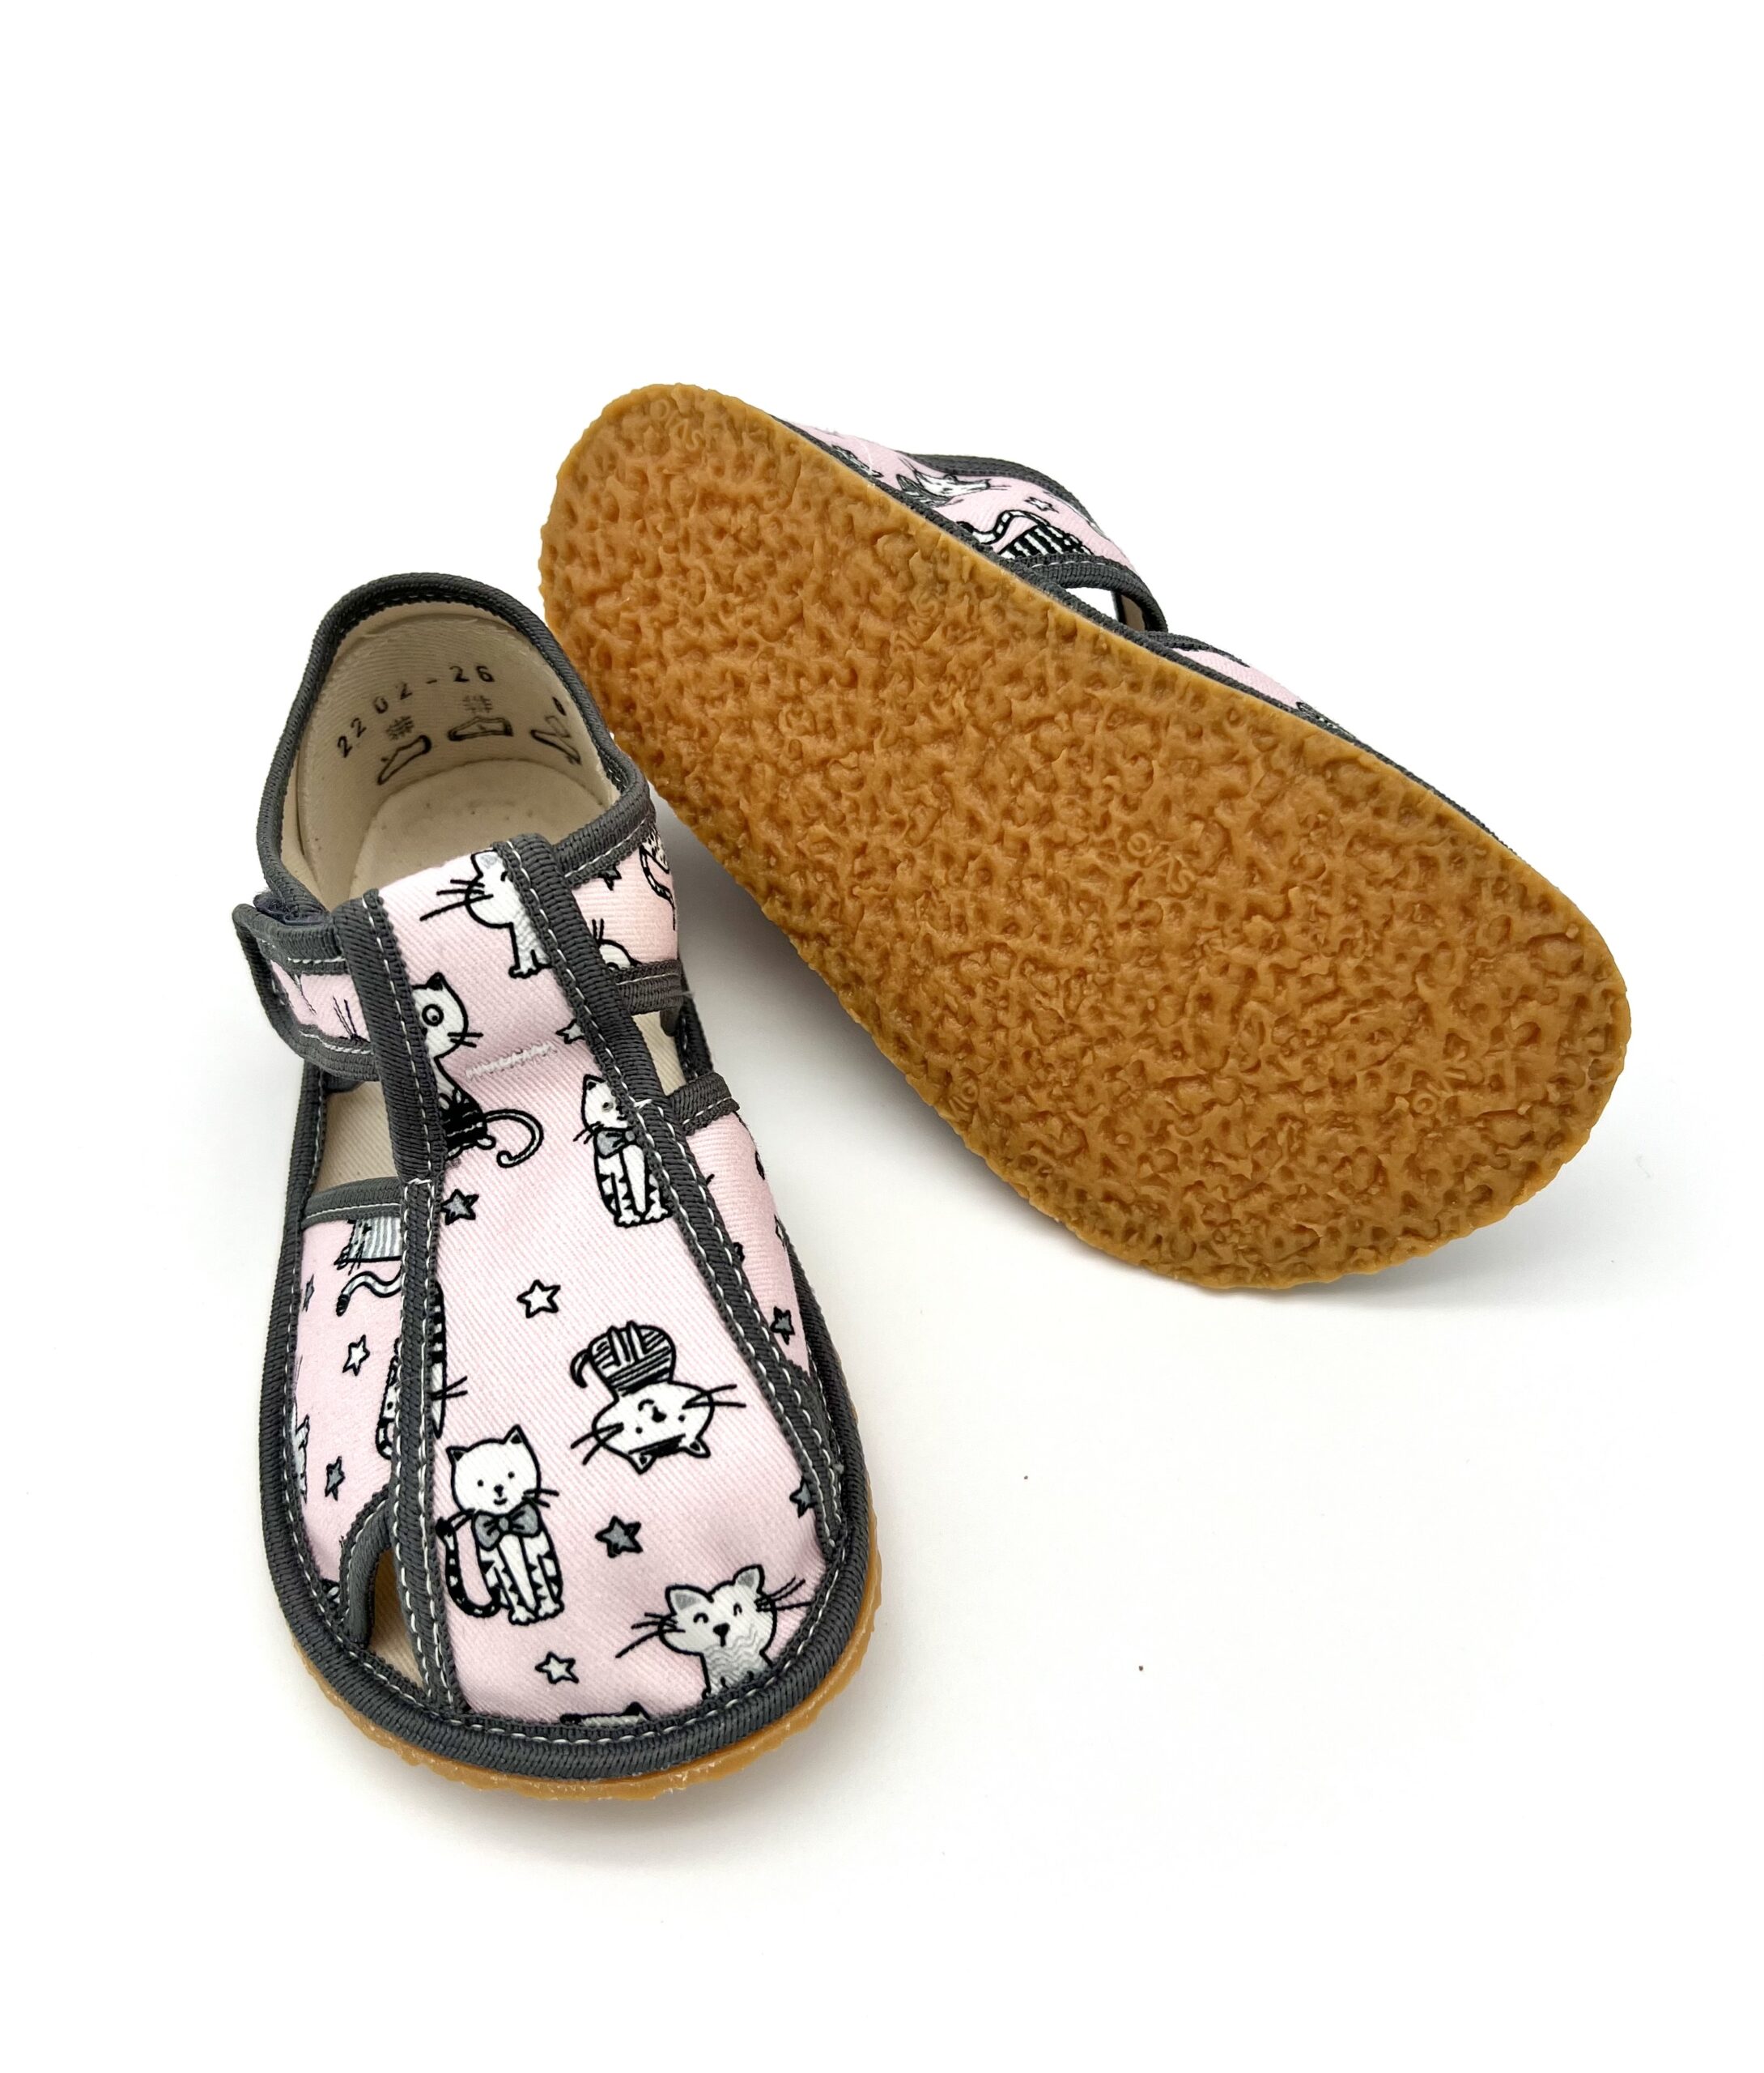 Baby Bare sisejalatsid Grey Cat Laste barefoot jalatsid - HellyK - Kvaliteetsed lasteriided, villariided, barefoot jalatsid